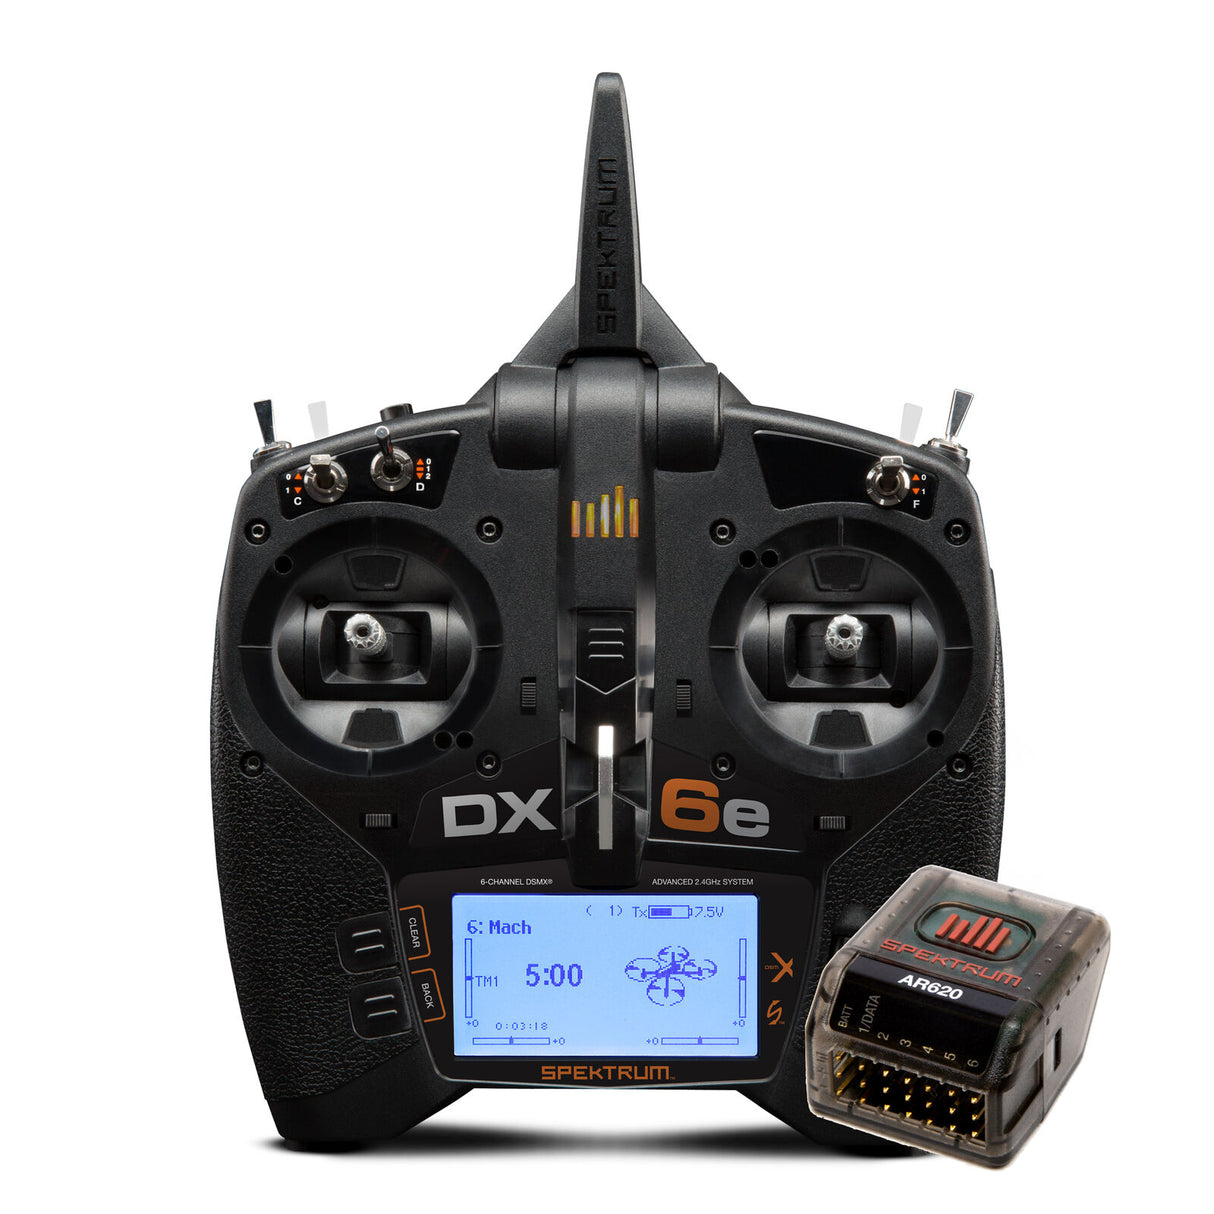 Système radio d'avion Spektrum SPM6655 RC DX6e 6 canaux 2,4 GHz avec récepteur AR620